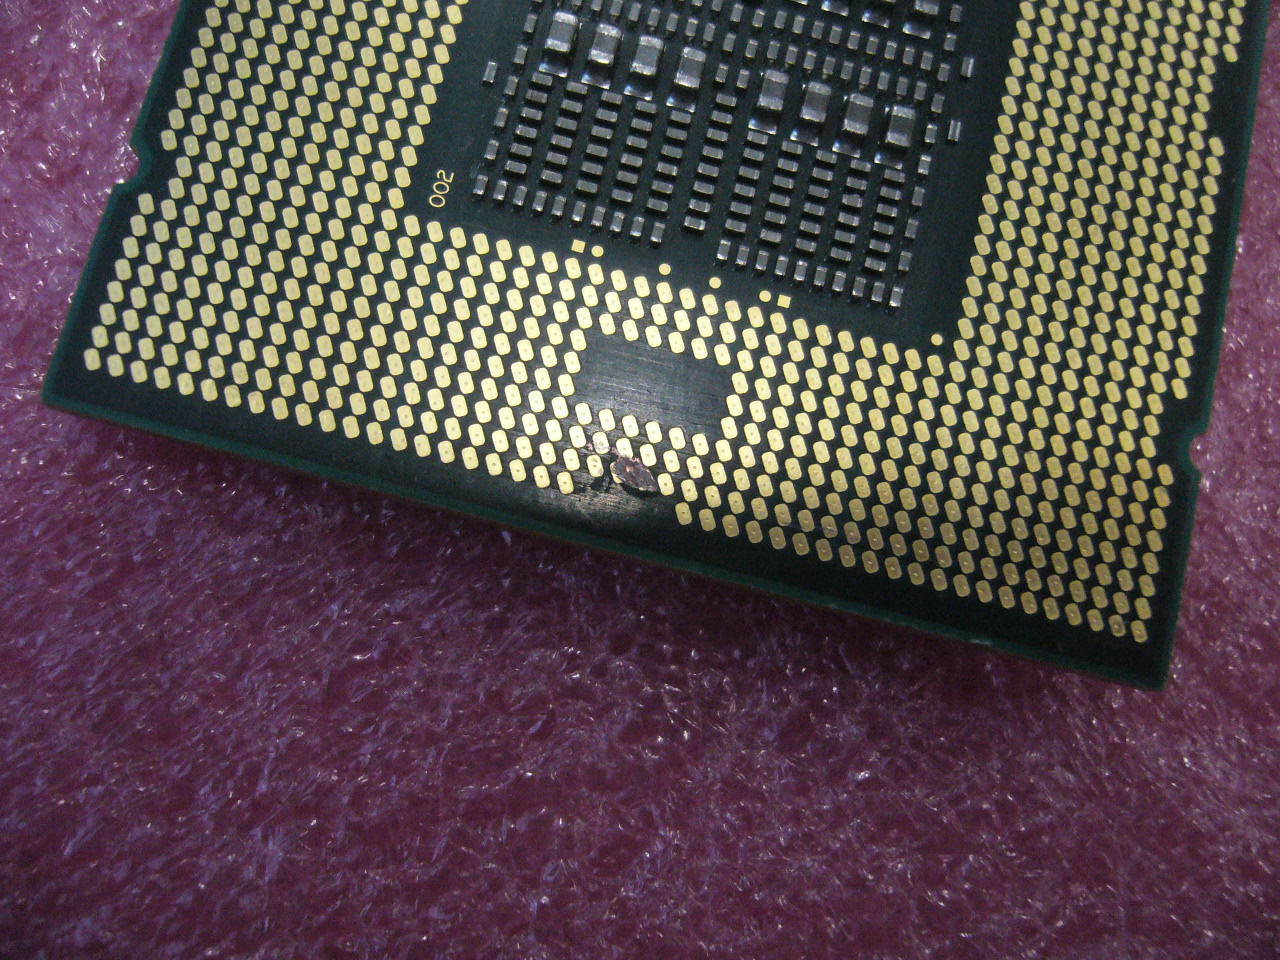 QTY 1x INTEL Eight-Cores CPU L7555 1.86GHZ/24MB 5.86GT/s LGA1567 SLBRF TDP 95W - zum Schließen ins Bild klicken